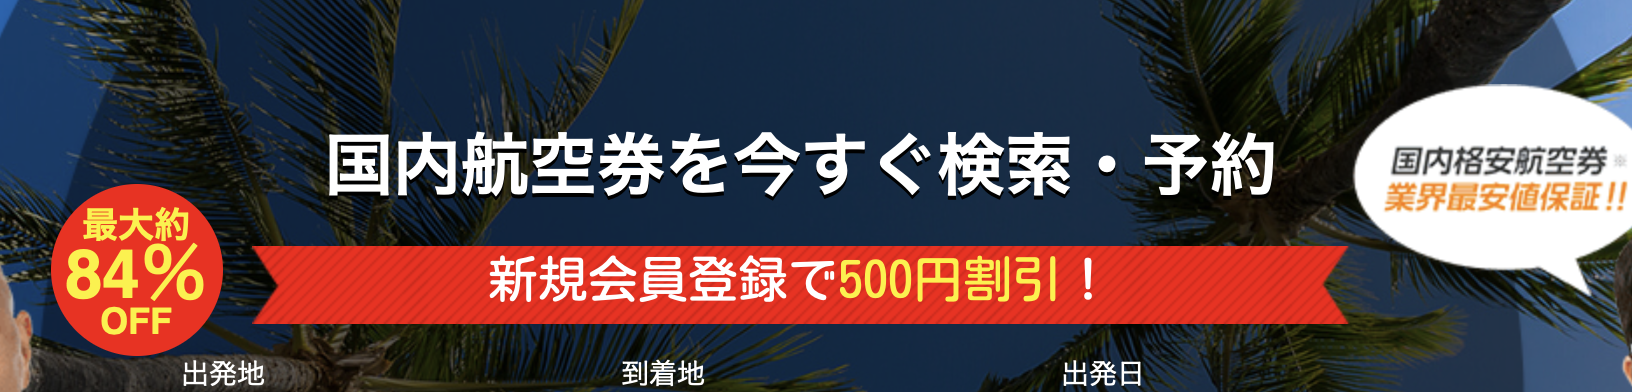 ソラハピの500円割引キャンペーン